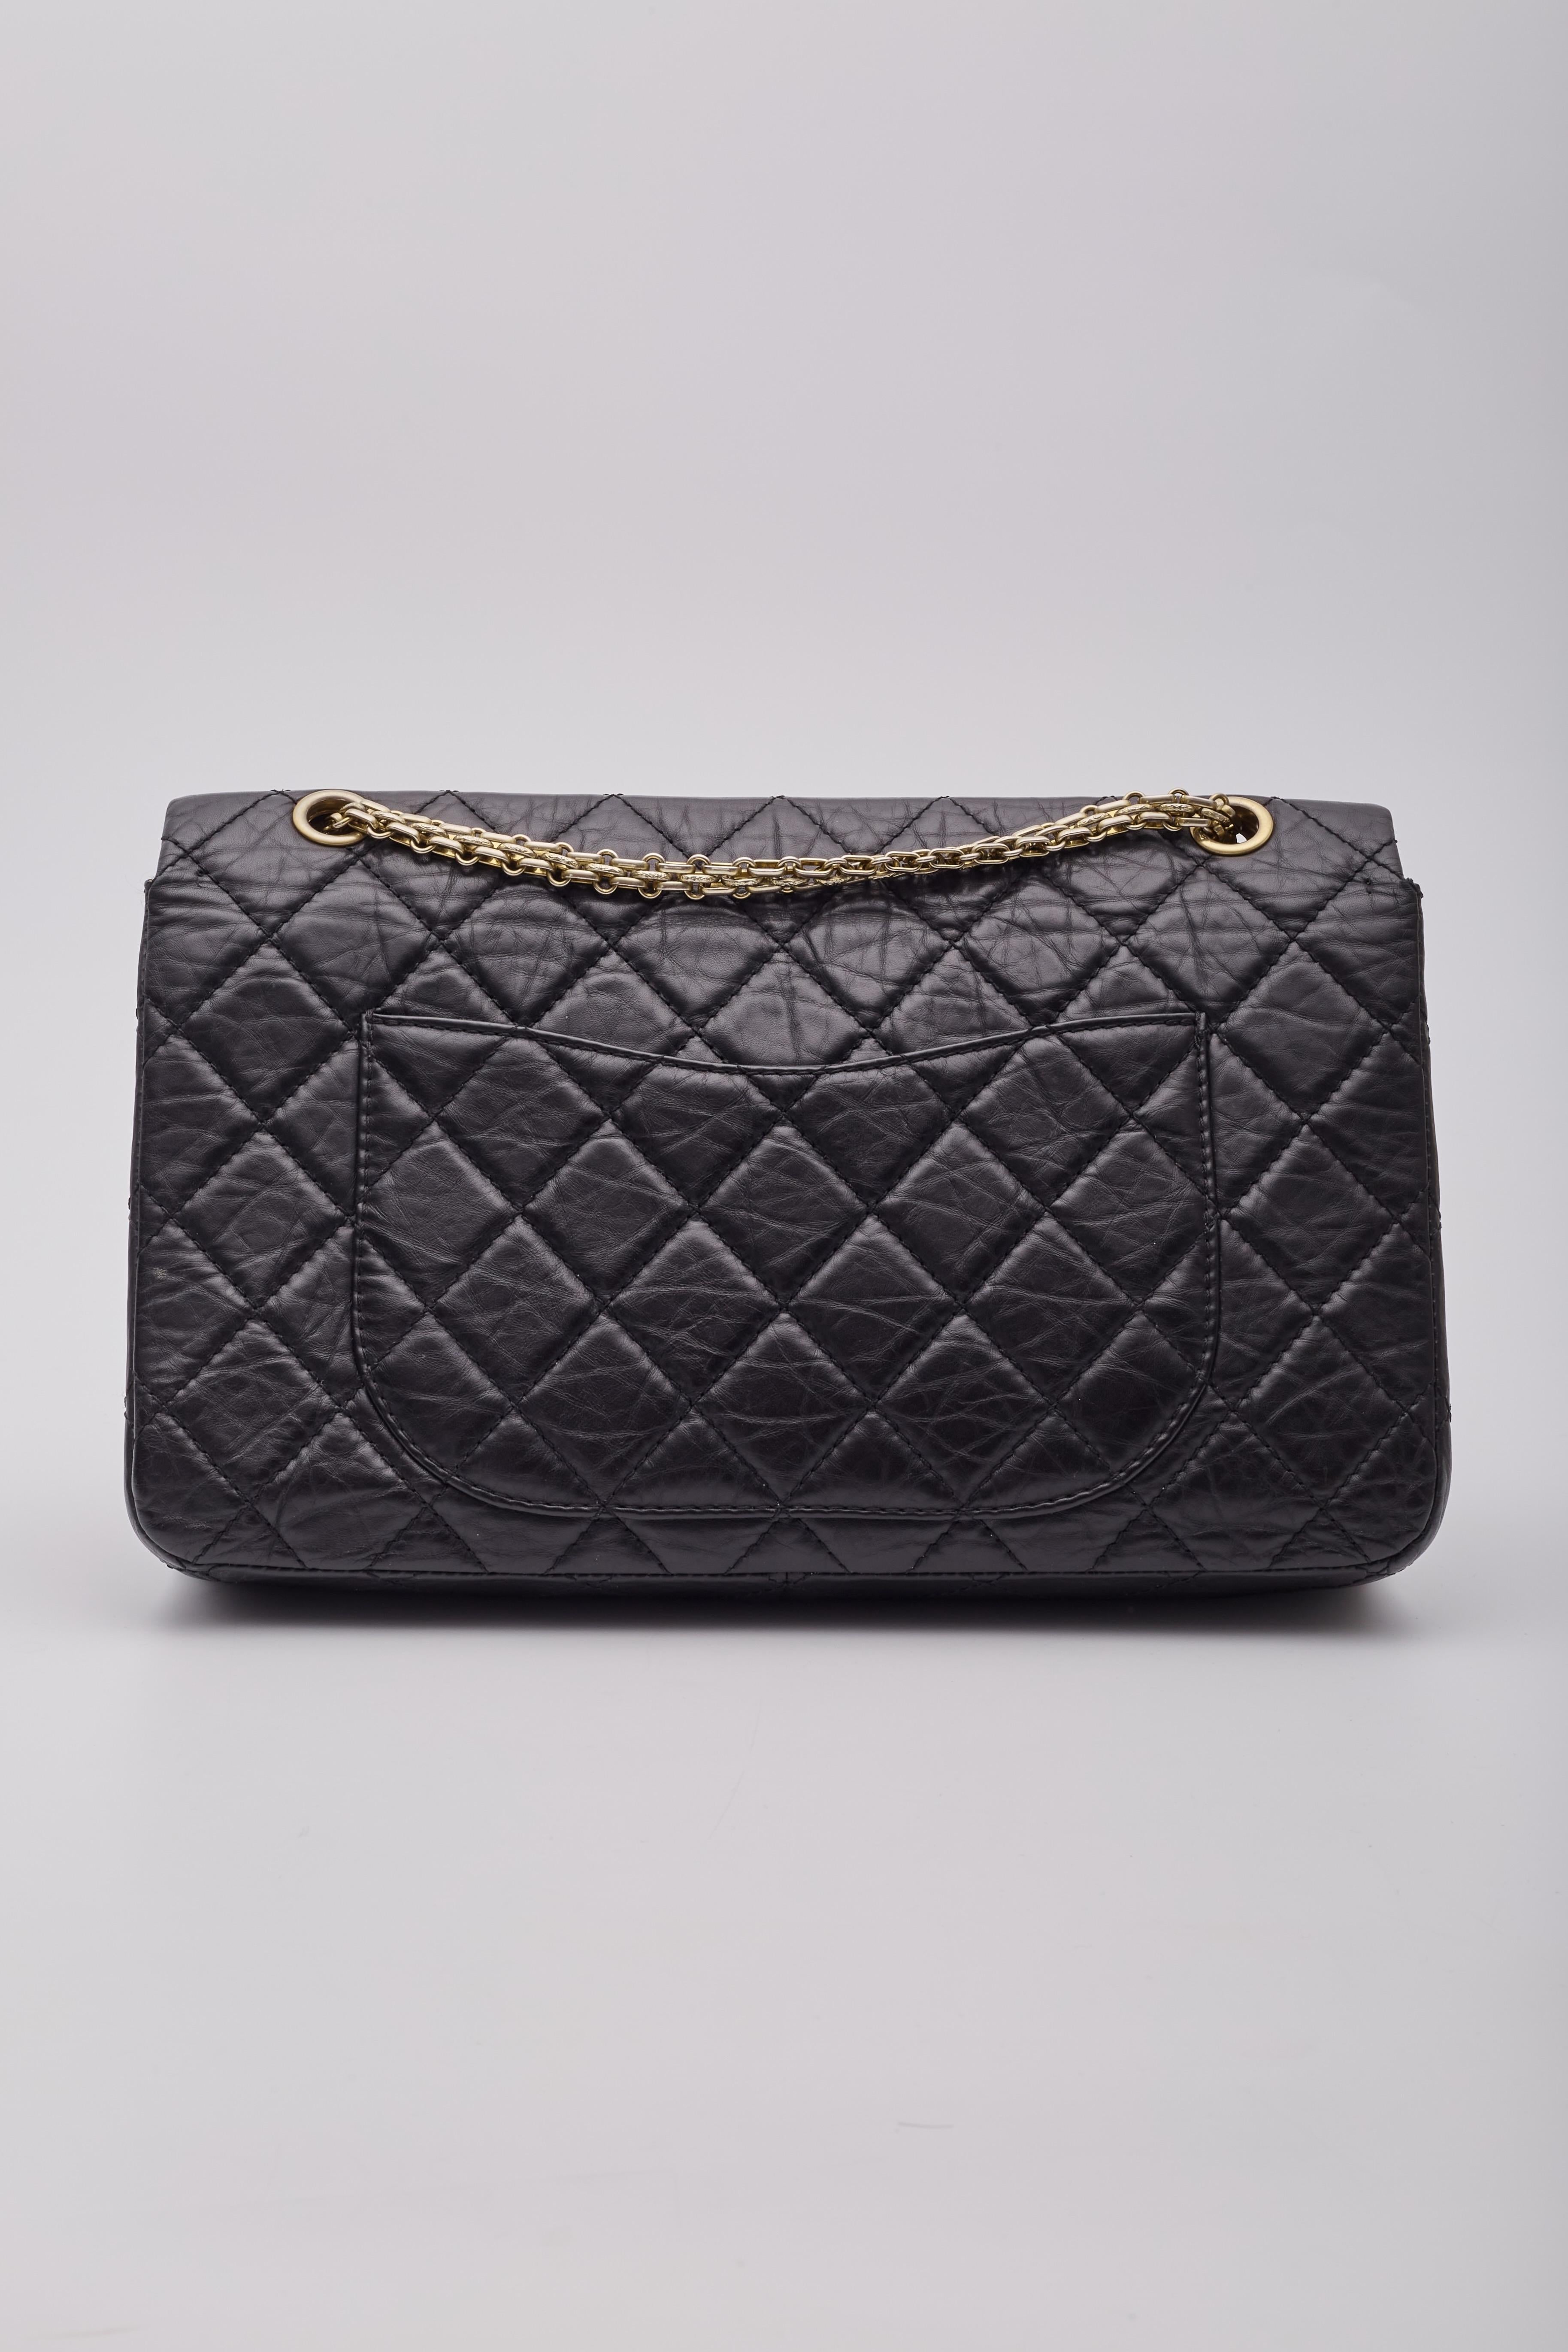 Chanel sac à rabat 2.55 227 réédition Pour femmes en vente